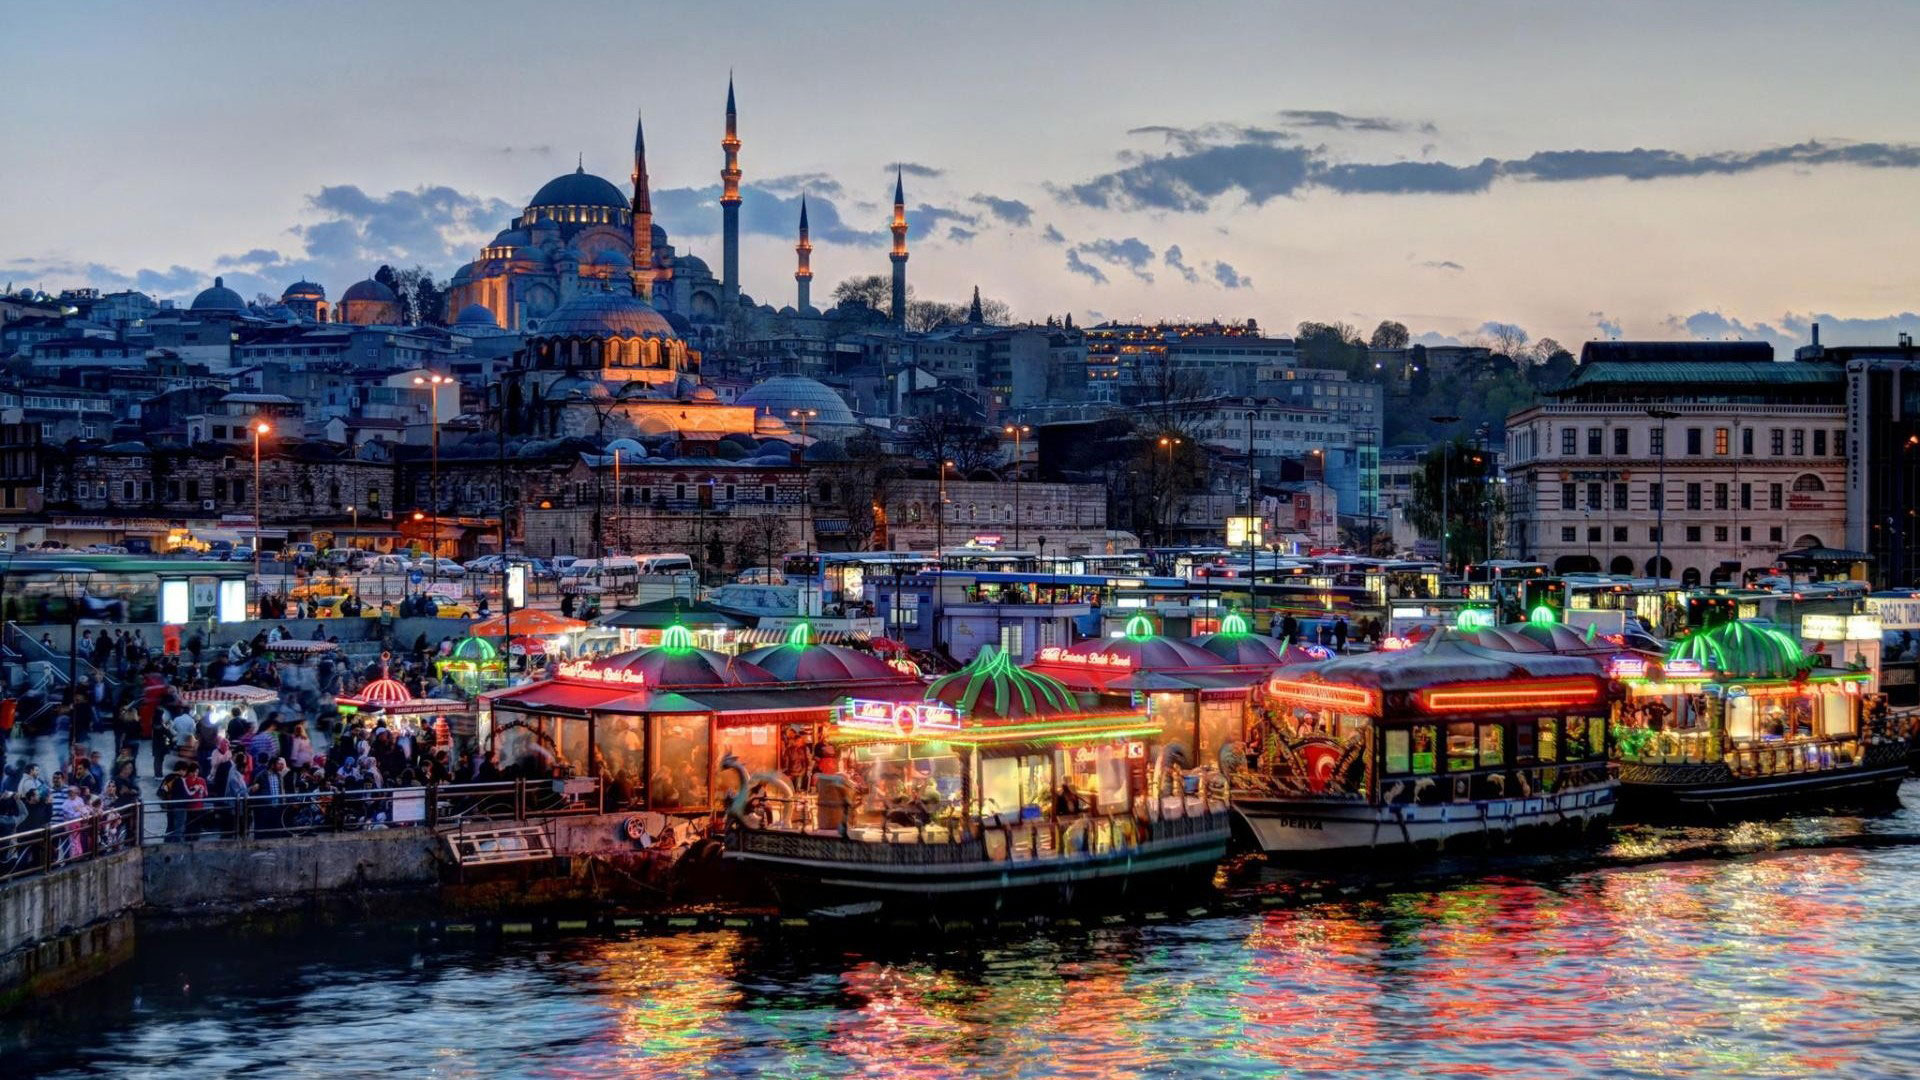 افضل اماكن سياحية في اسطنبول ومعلومات عن كل مكان